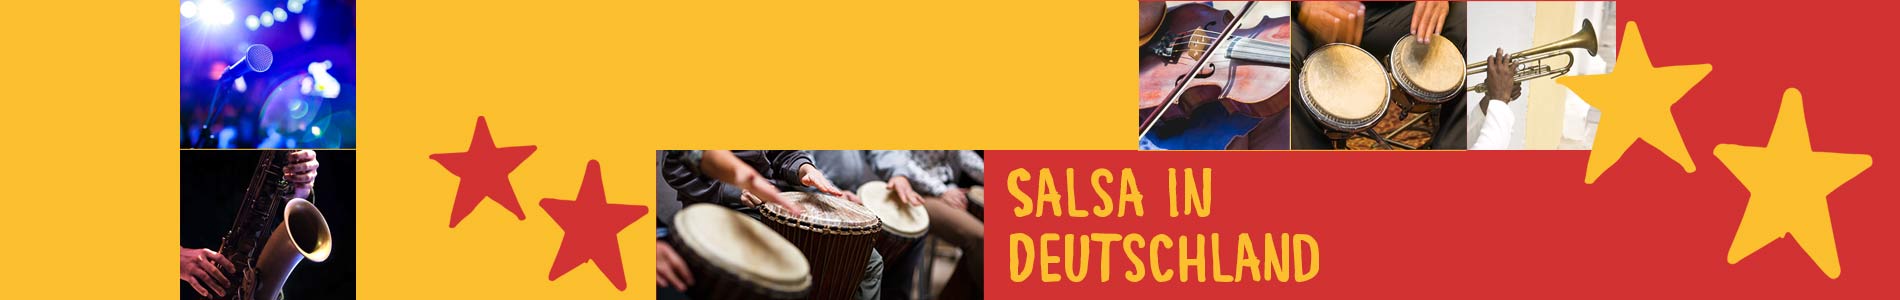 Salsa in Chorin – Salsa lernen und tanzen, Tanzkurse, Partys, Veranstaltungen